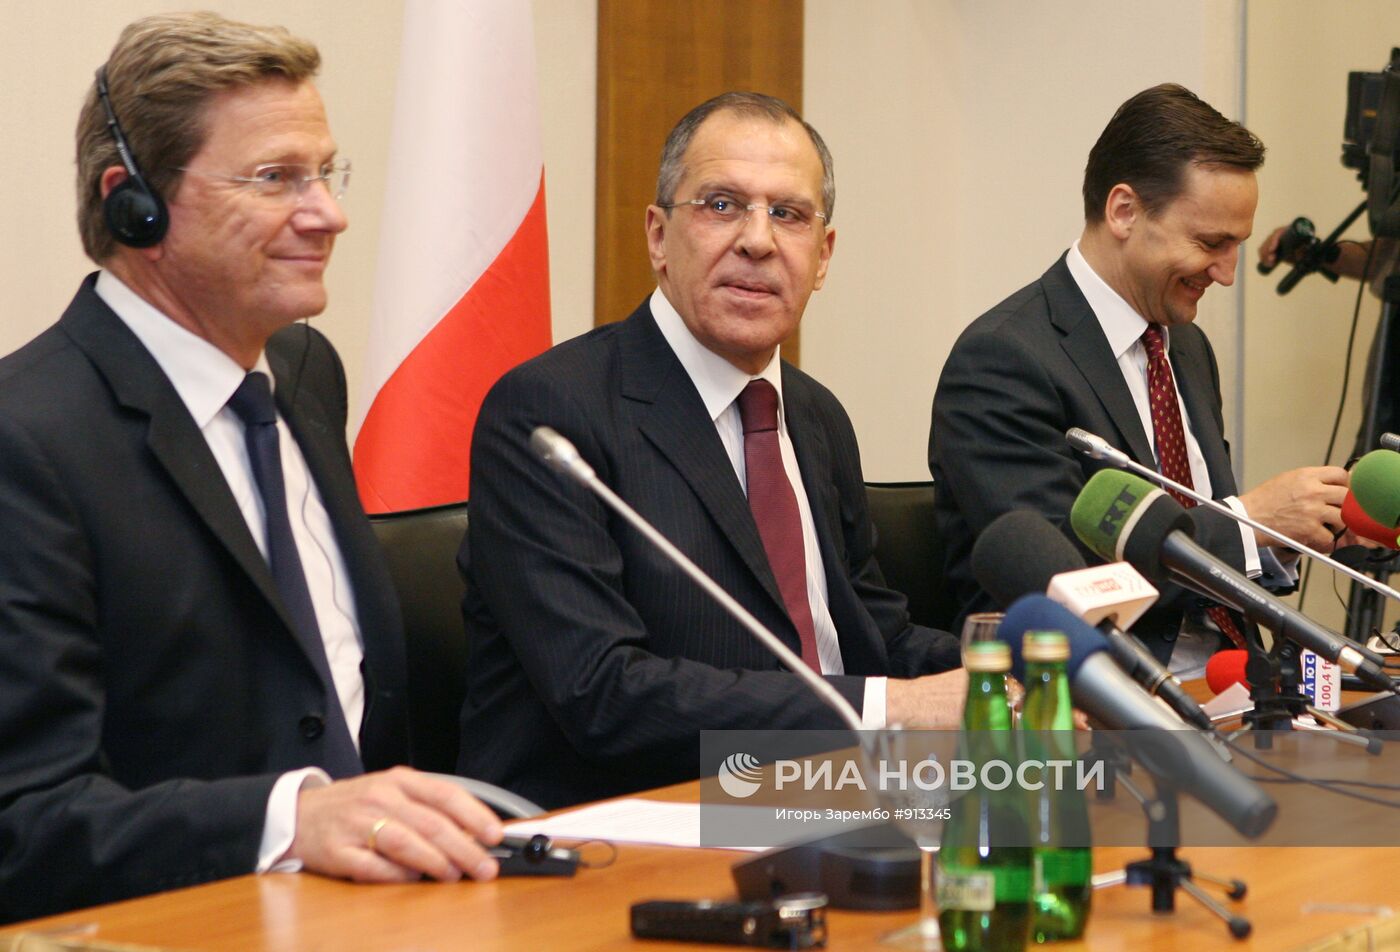 Встреча министров иностранных дел России, Польши и Германии